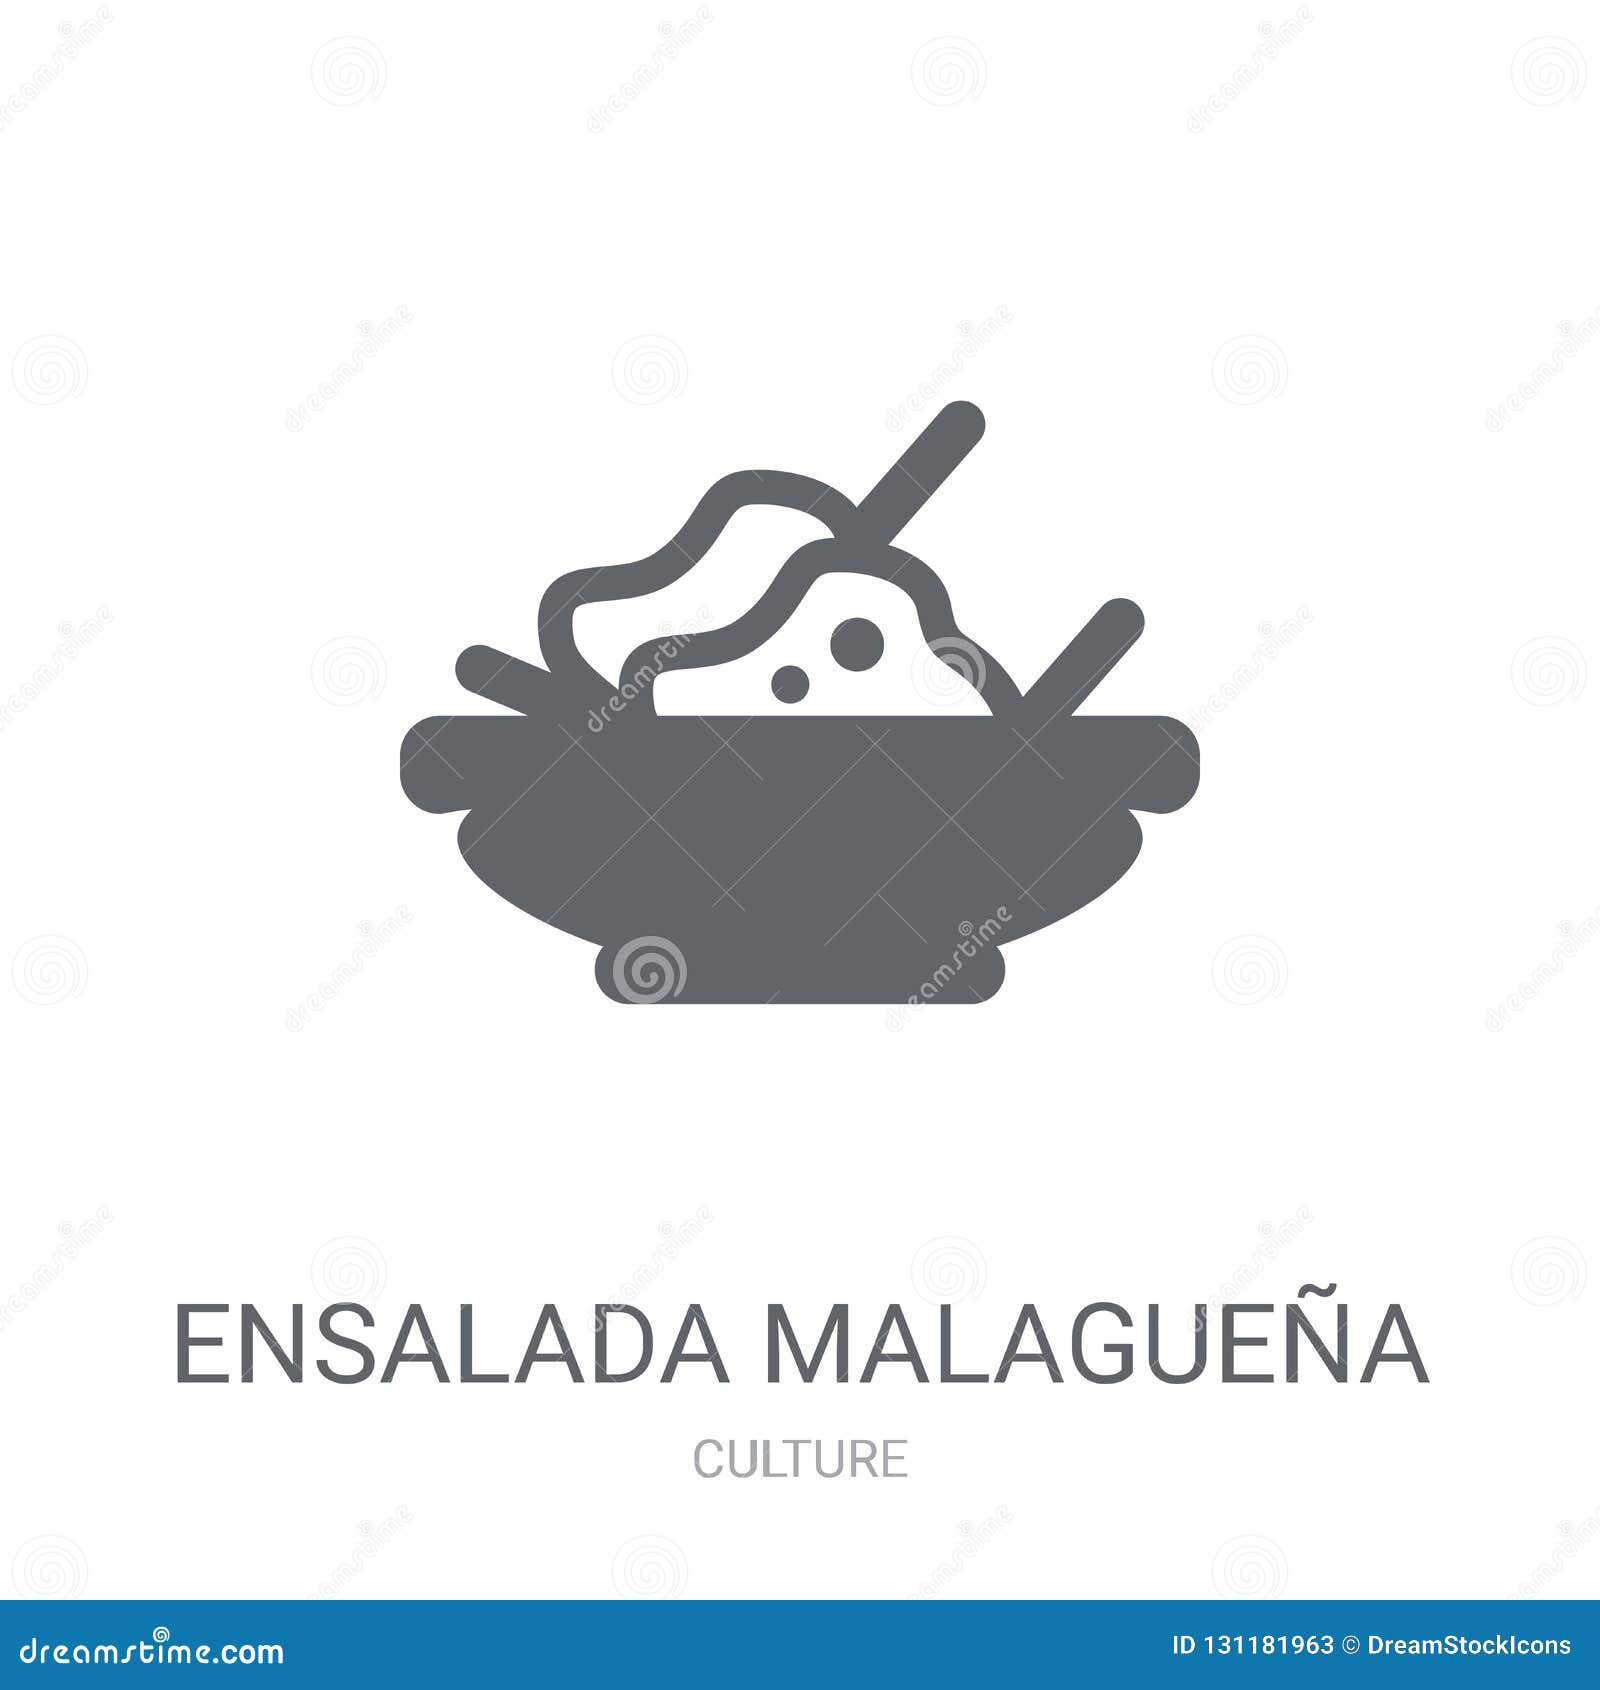 ensalada malagueÃÂ±a icon. trendy ensalada malagueÃÂ±a logo concept on white background from culture collection